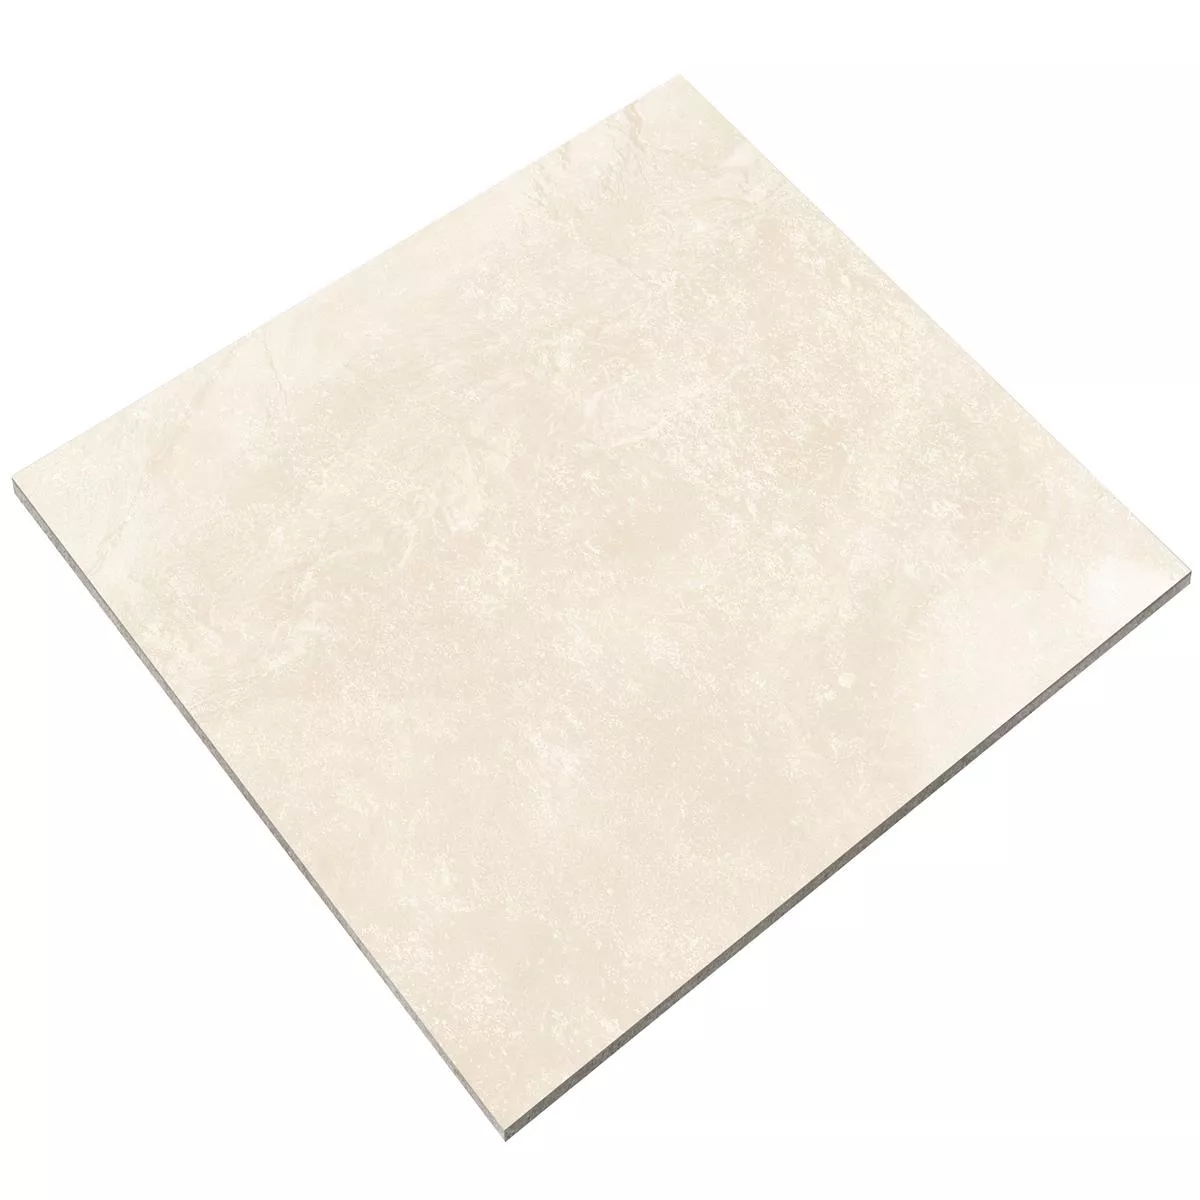 Floor Tiles Hemingway Lappato XXL Cream 120x120cm